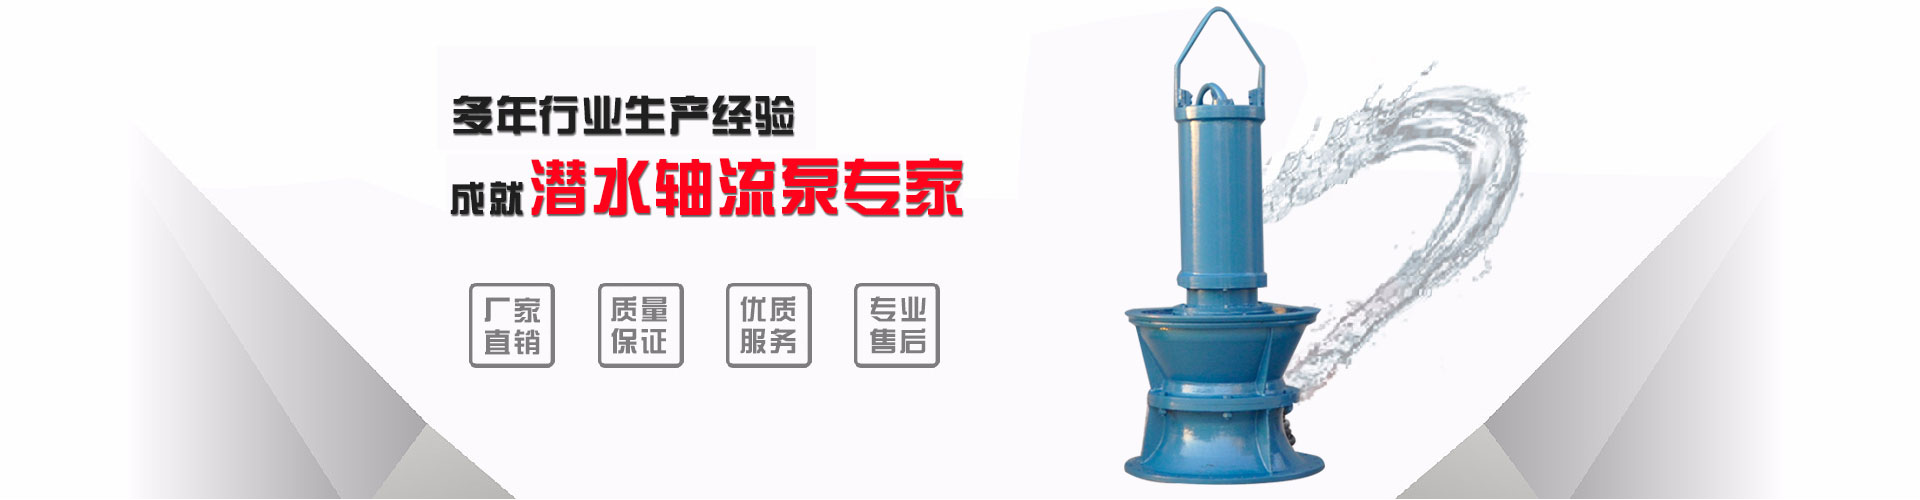 福建浮筒泵工业_山南浮筒泵